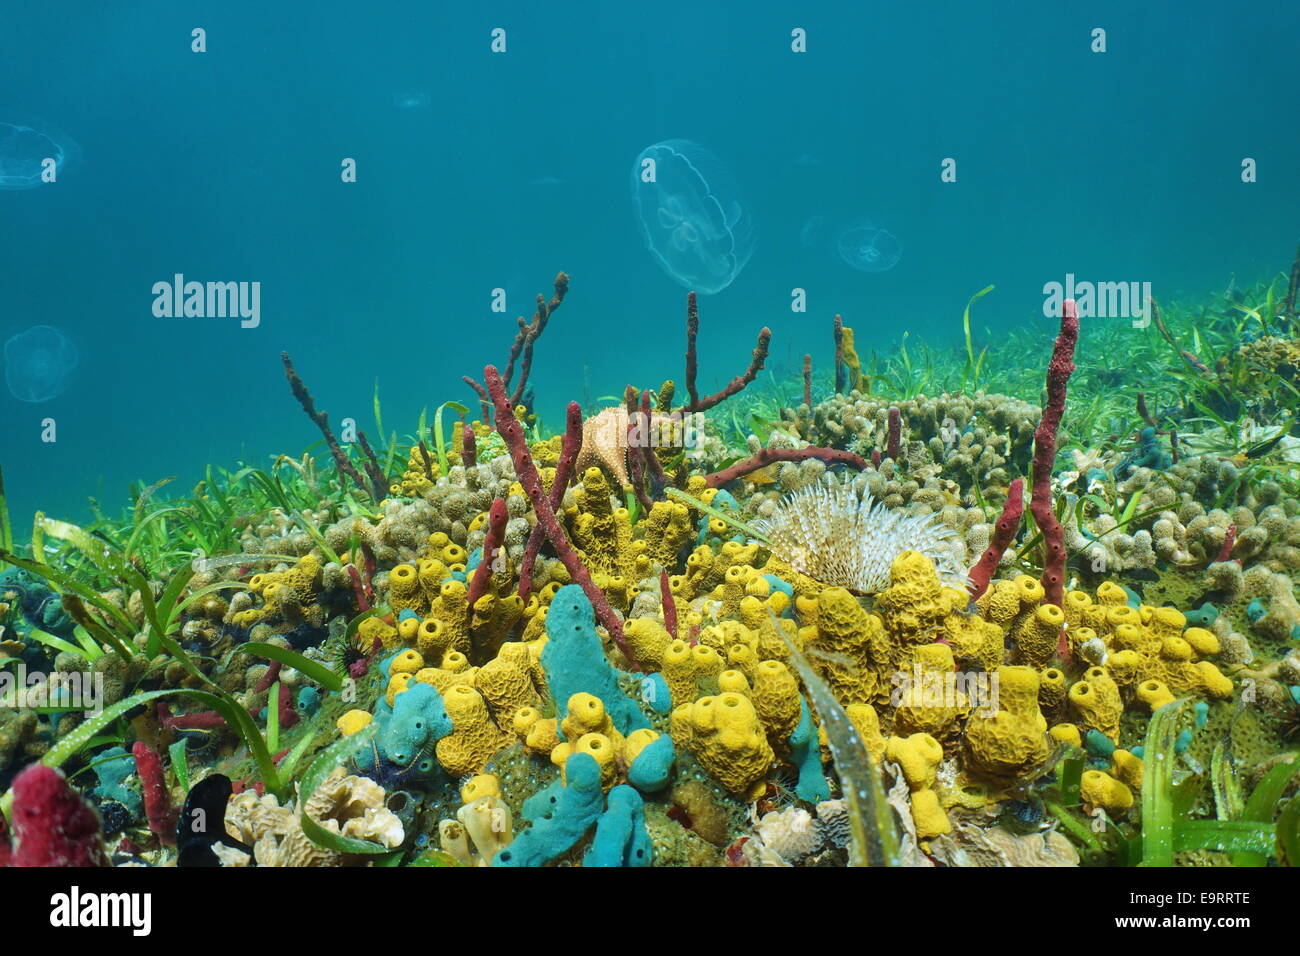 Fondos marinos con coloridas criaturas marinas y medusas en el fondo, el mar Caribe Foto de stock